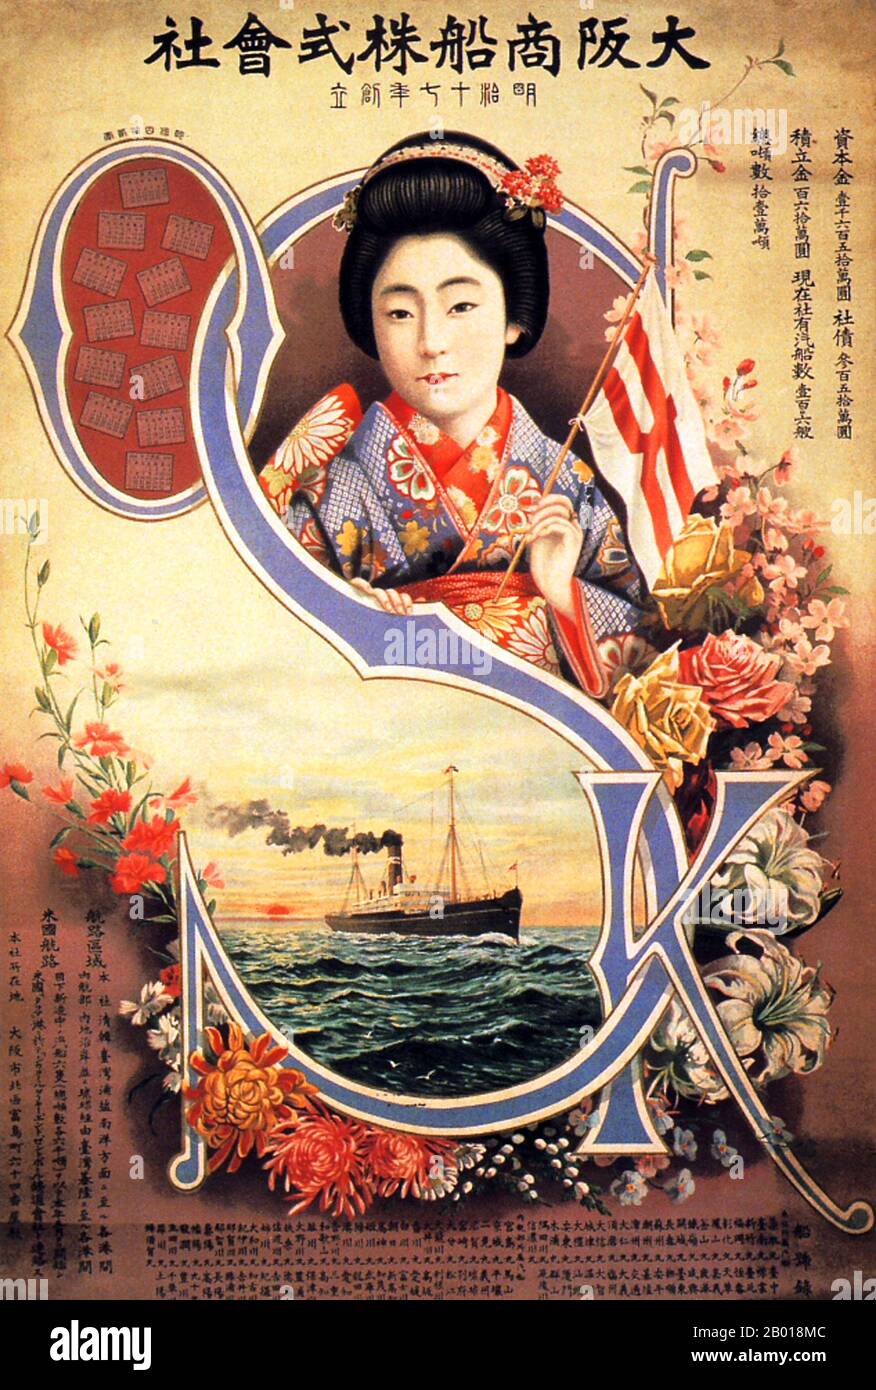 Japon : affiche publicitaire pour la société Osaka Mercantile Steamship, 1909. Osaka Mercantile Steamship affiche représentant une japonaise vêtue de façon élaborée dans un kimono traditionnel. Banque D'Images